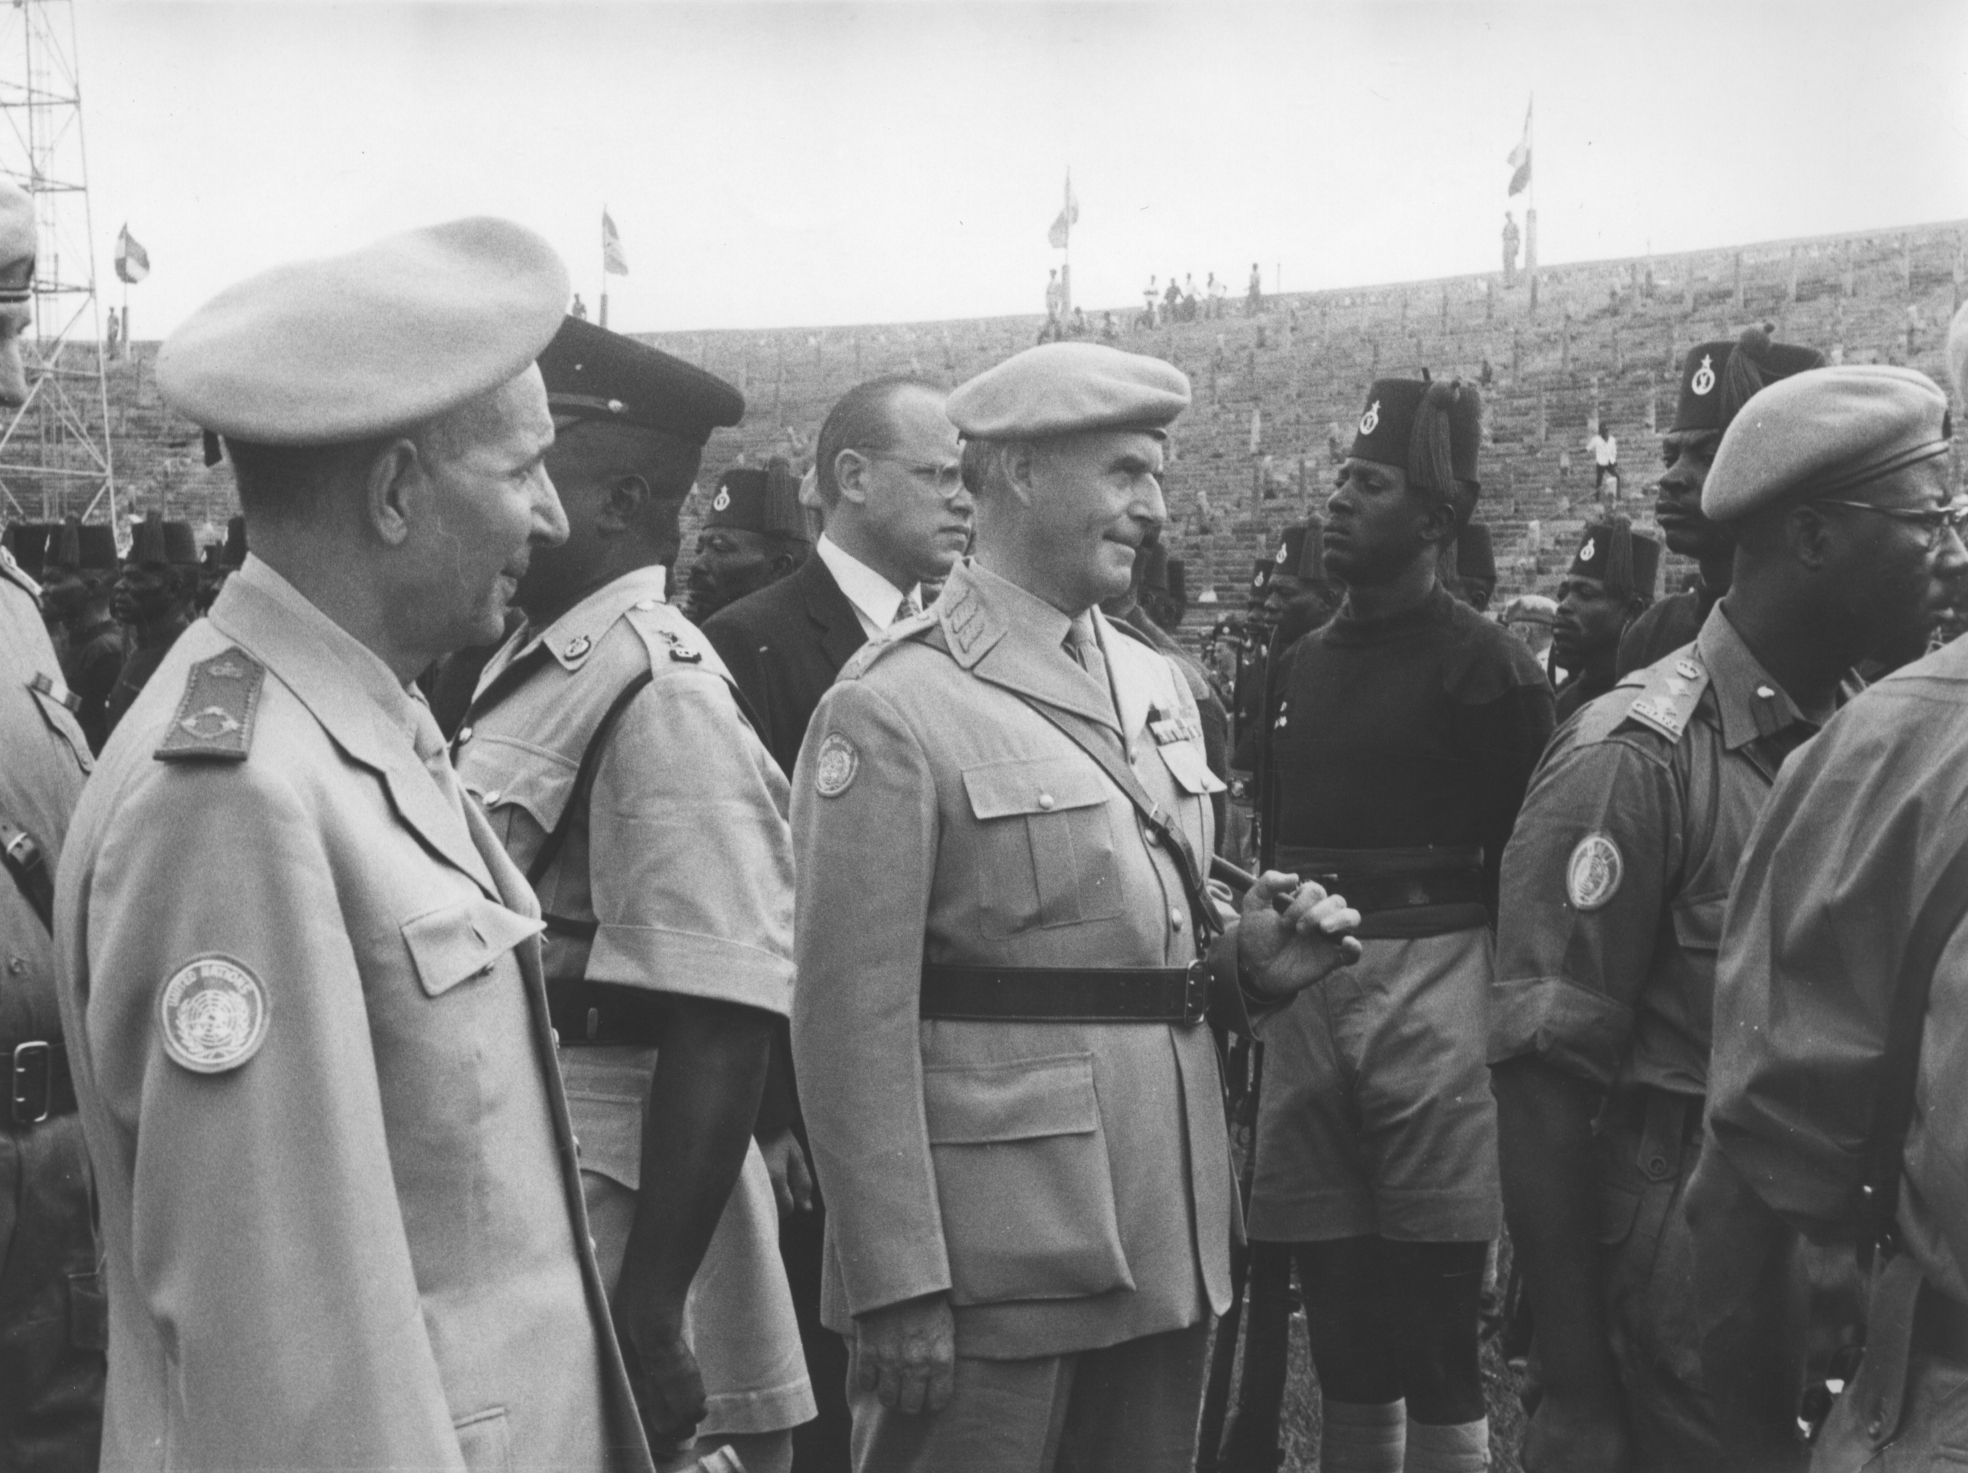 Les Forces Armées Royales au Congo - ONUC - 1960/61 51361826793_b82d7b69d6_o_d